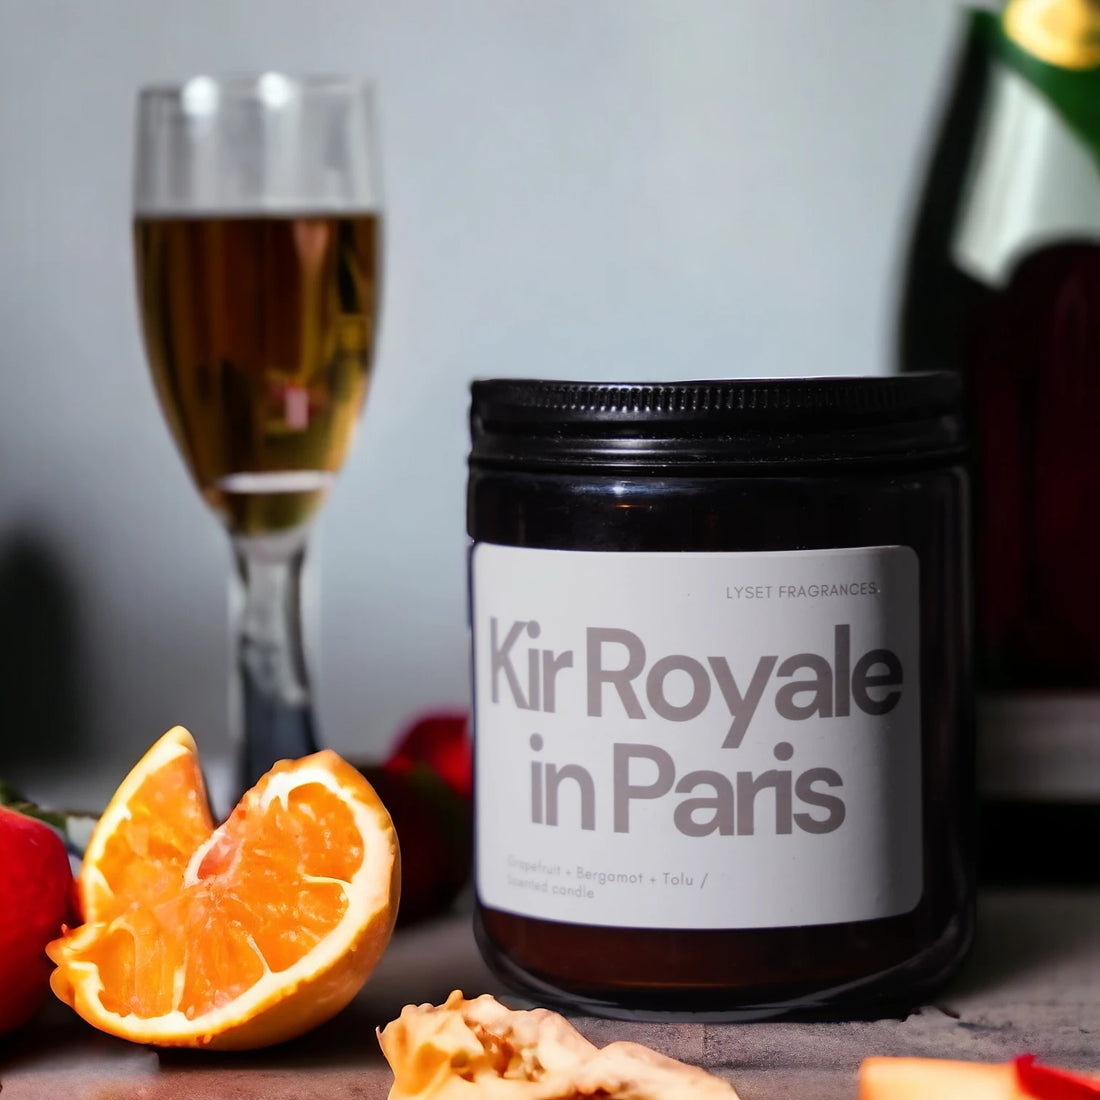 Kir Royale in Paris